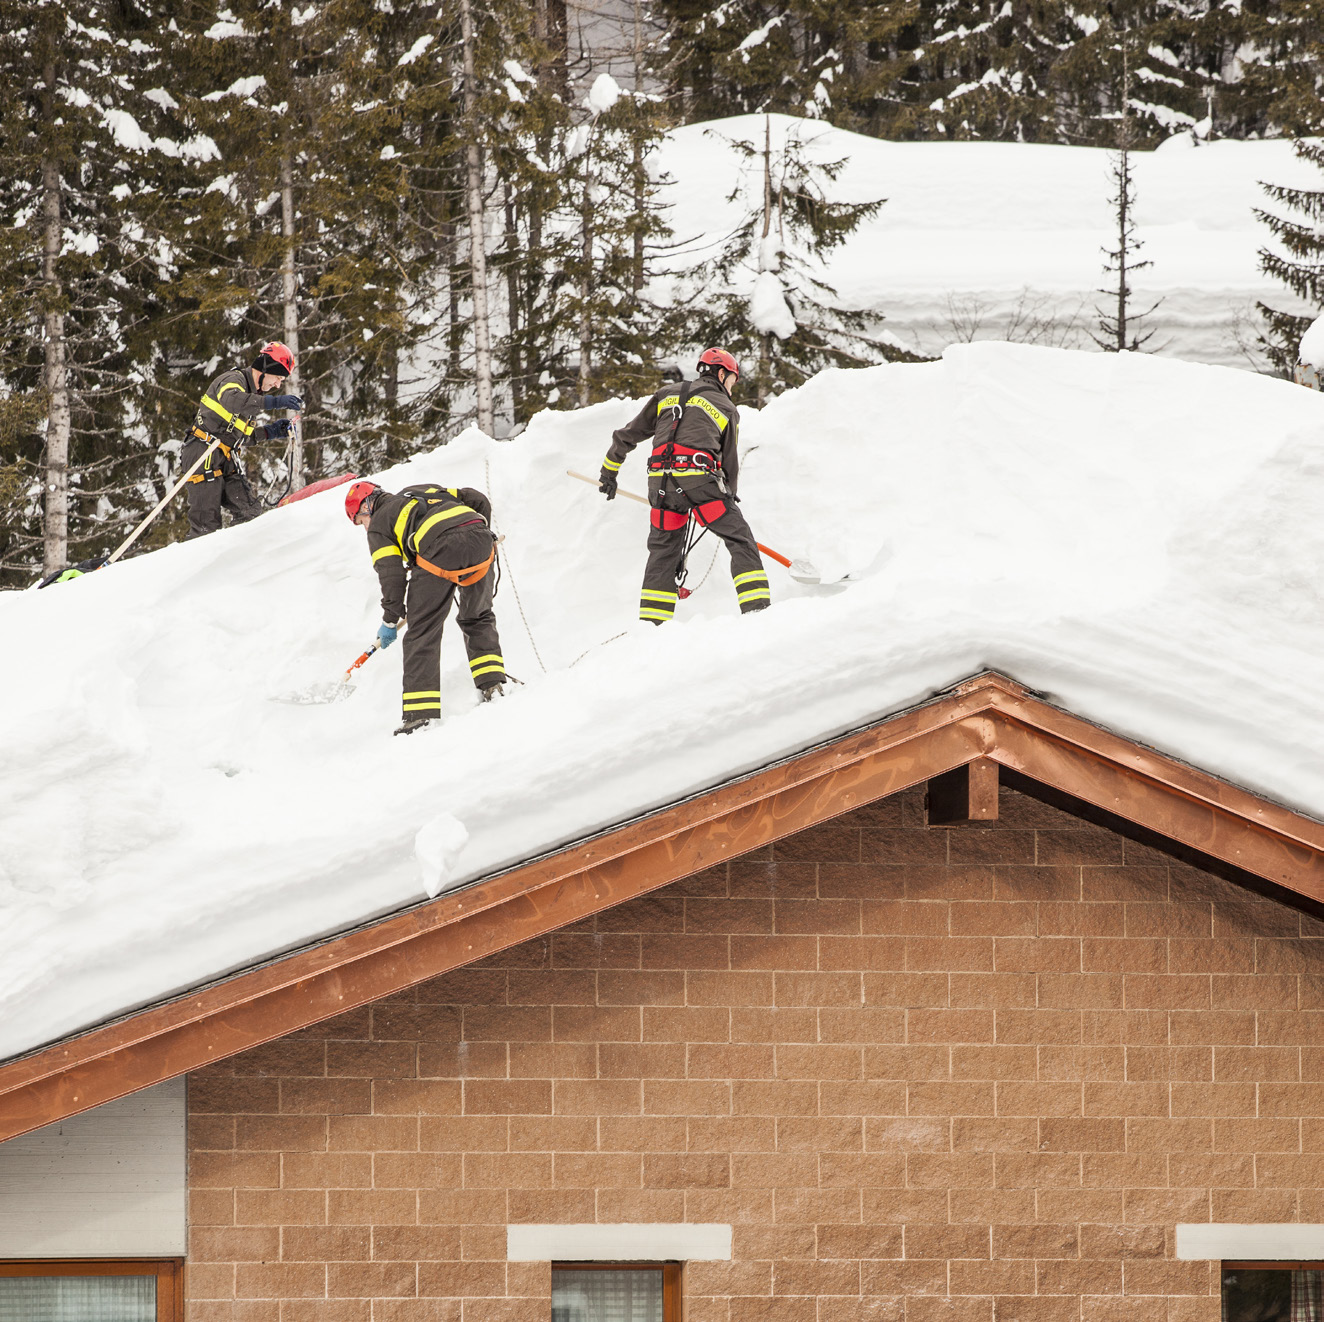 SKOTTA SÄKERT Halvdagsutbildning som fokuserar på att arbeta säkert på tak vid snöskottning. Utbildningen hålls av godkänd instruktör. Att arbeta på tak är alltid riskabelt.